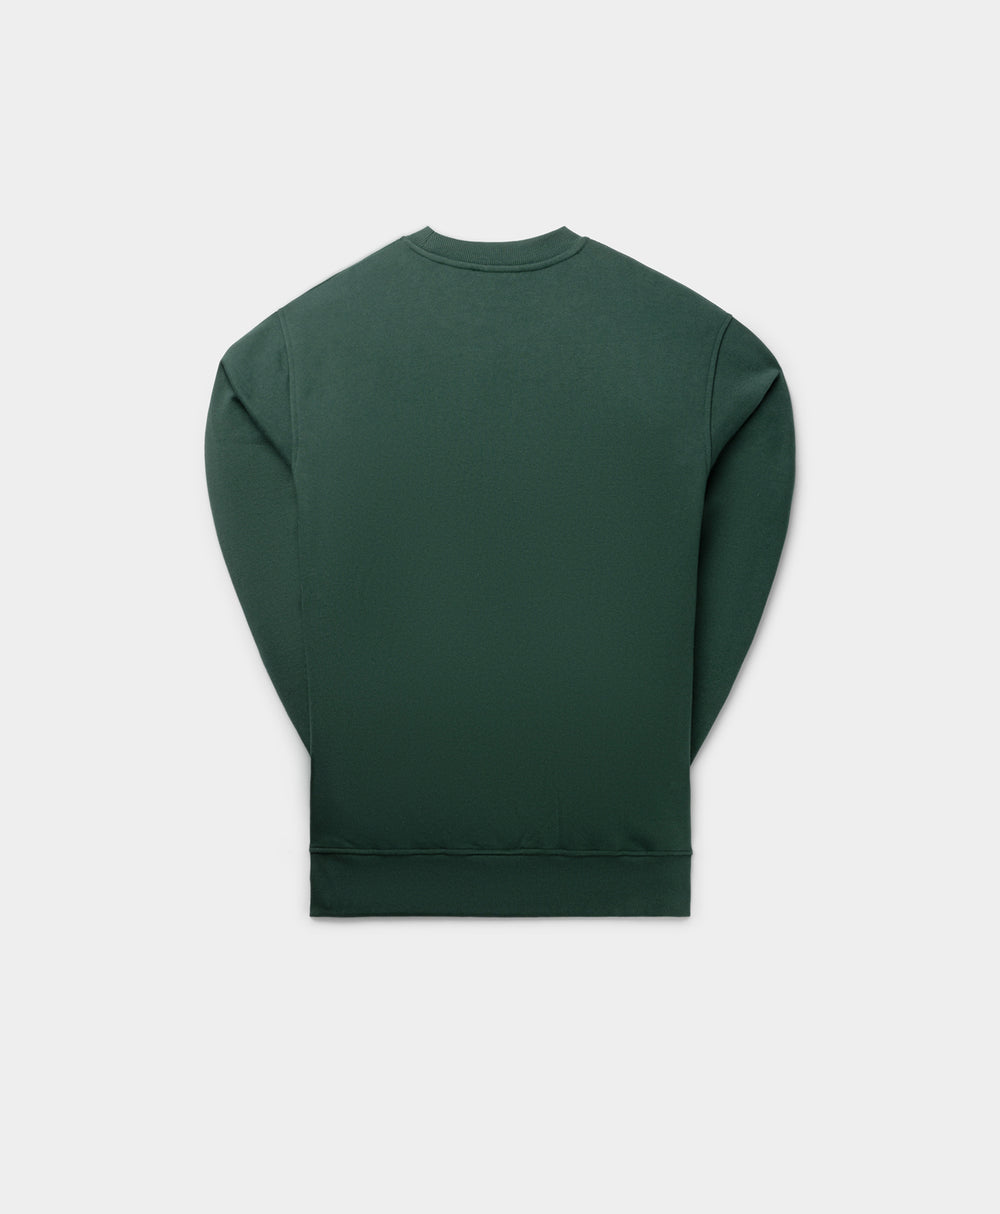 DP - Pine Green Circle Sweater - Packshot - Rear